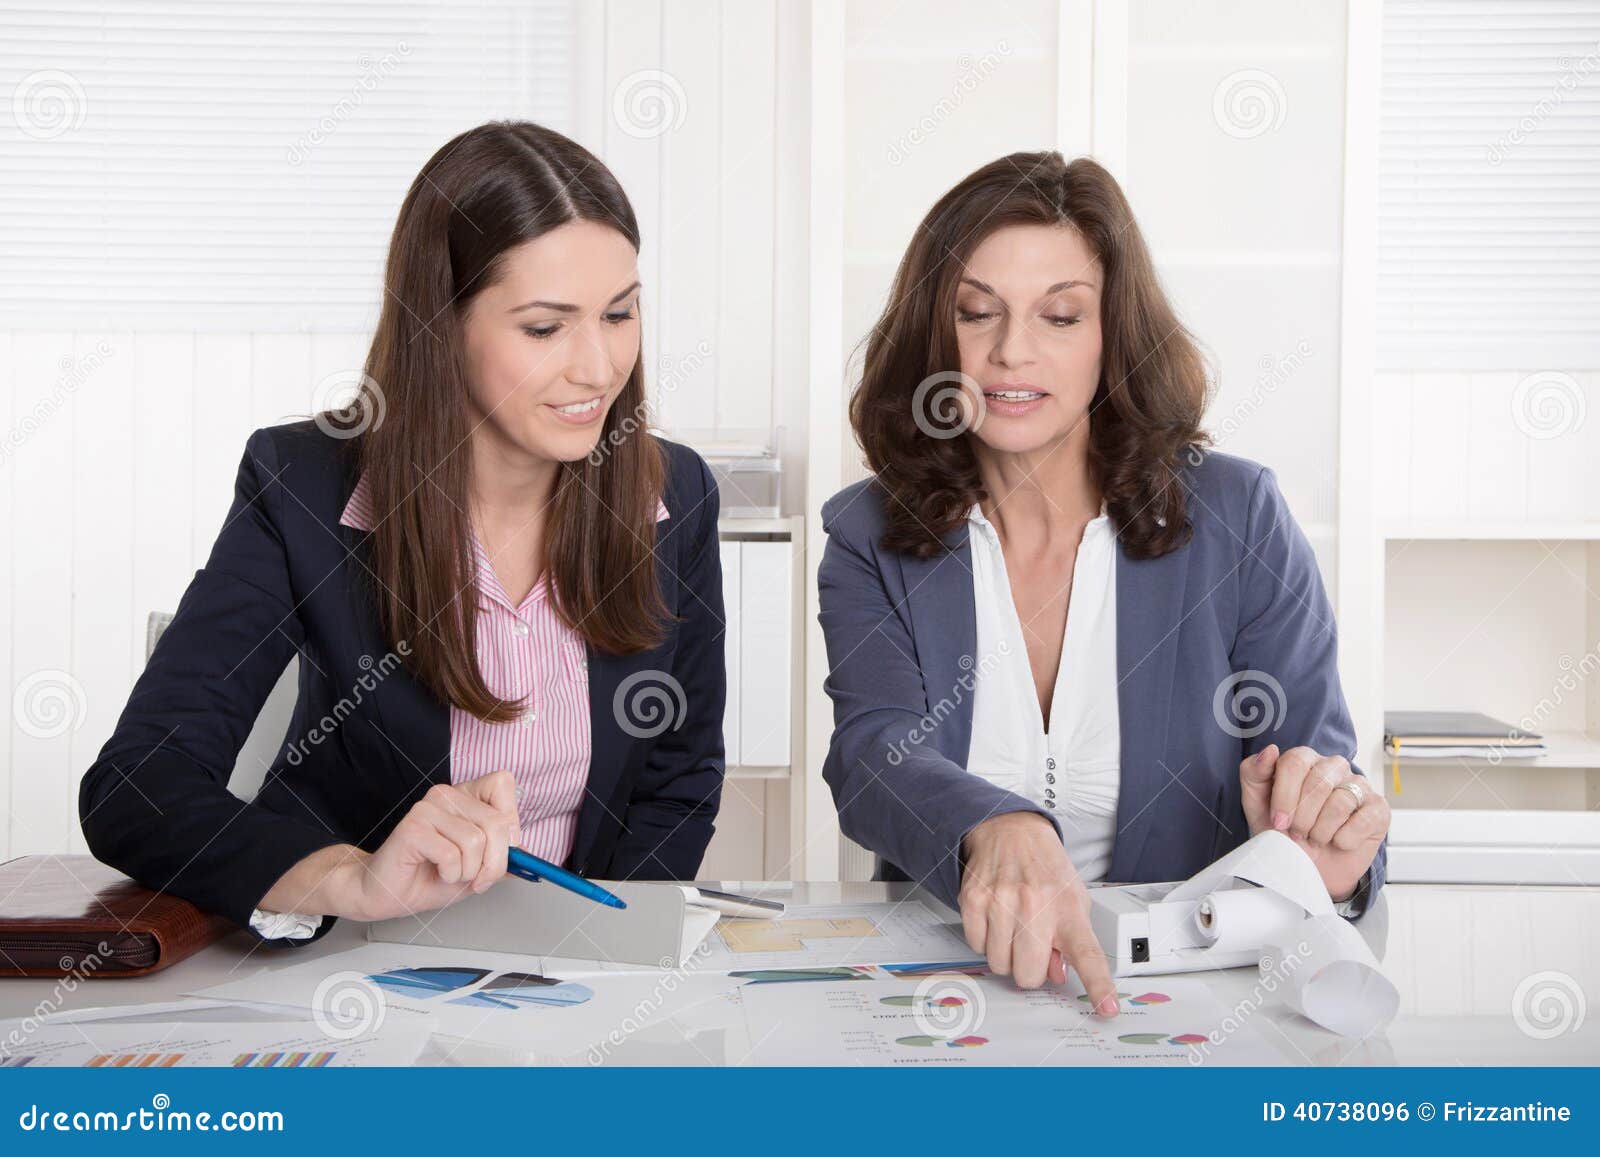 two business woman analyzing balance sheet.